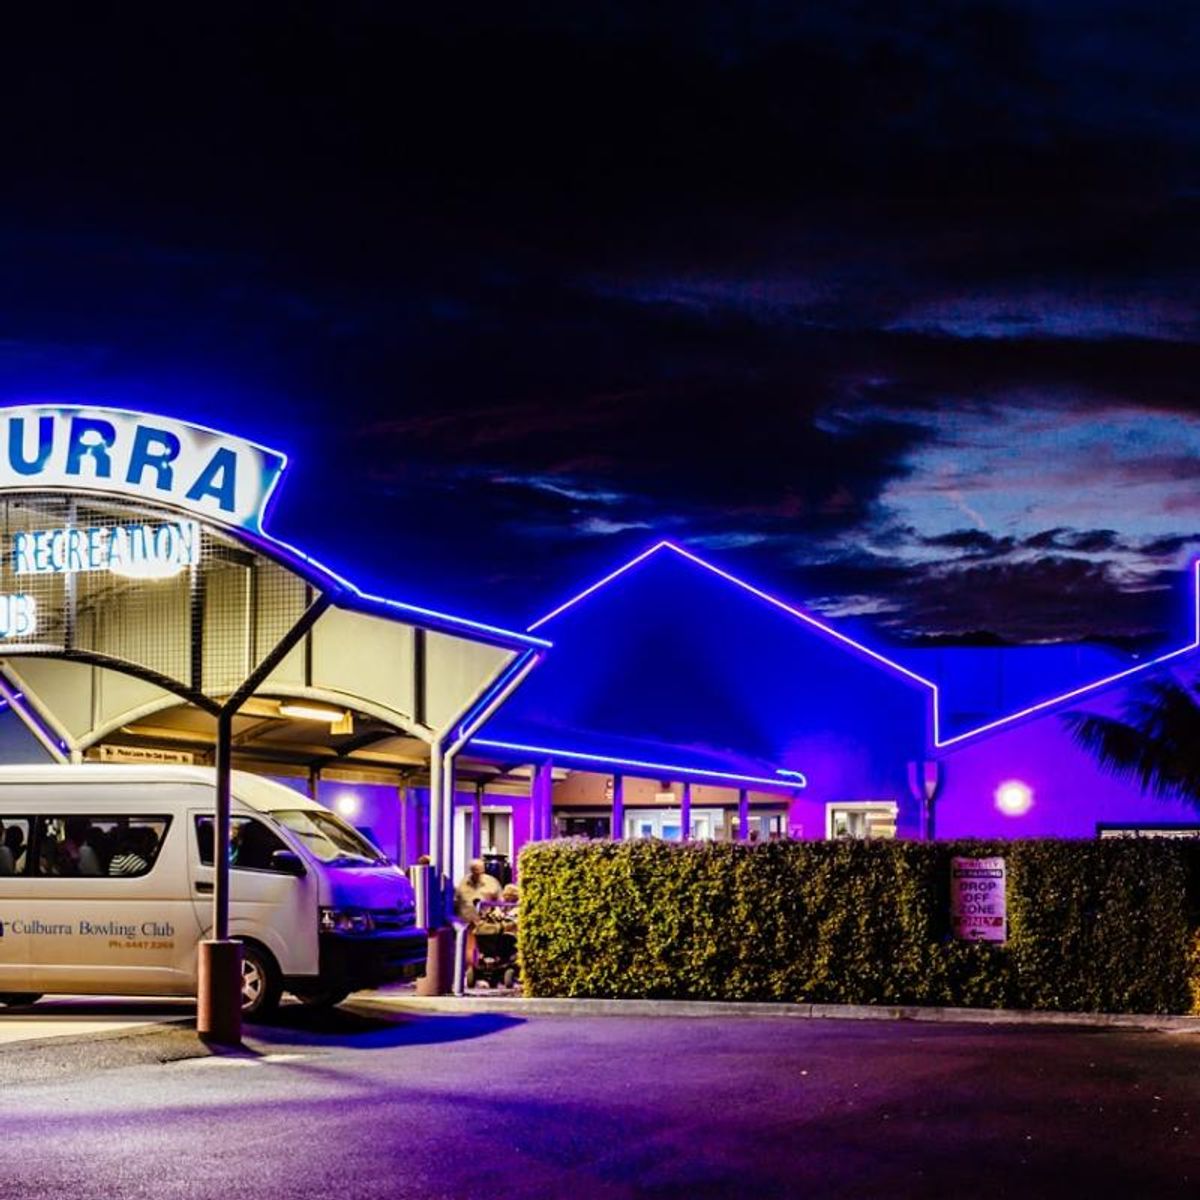 Culburra Beach Bowling Club